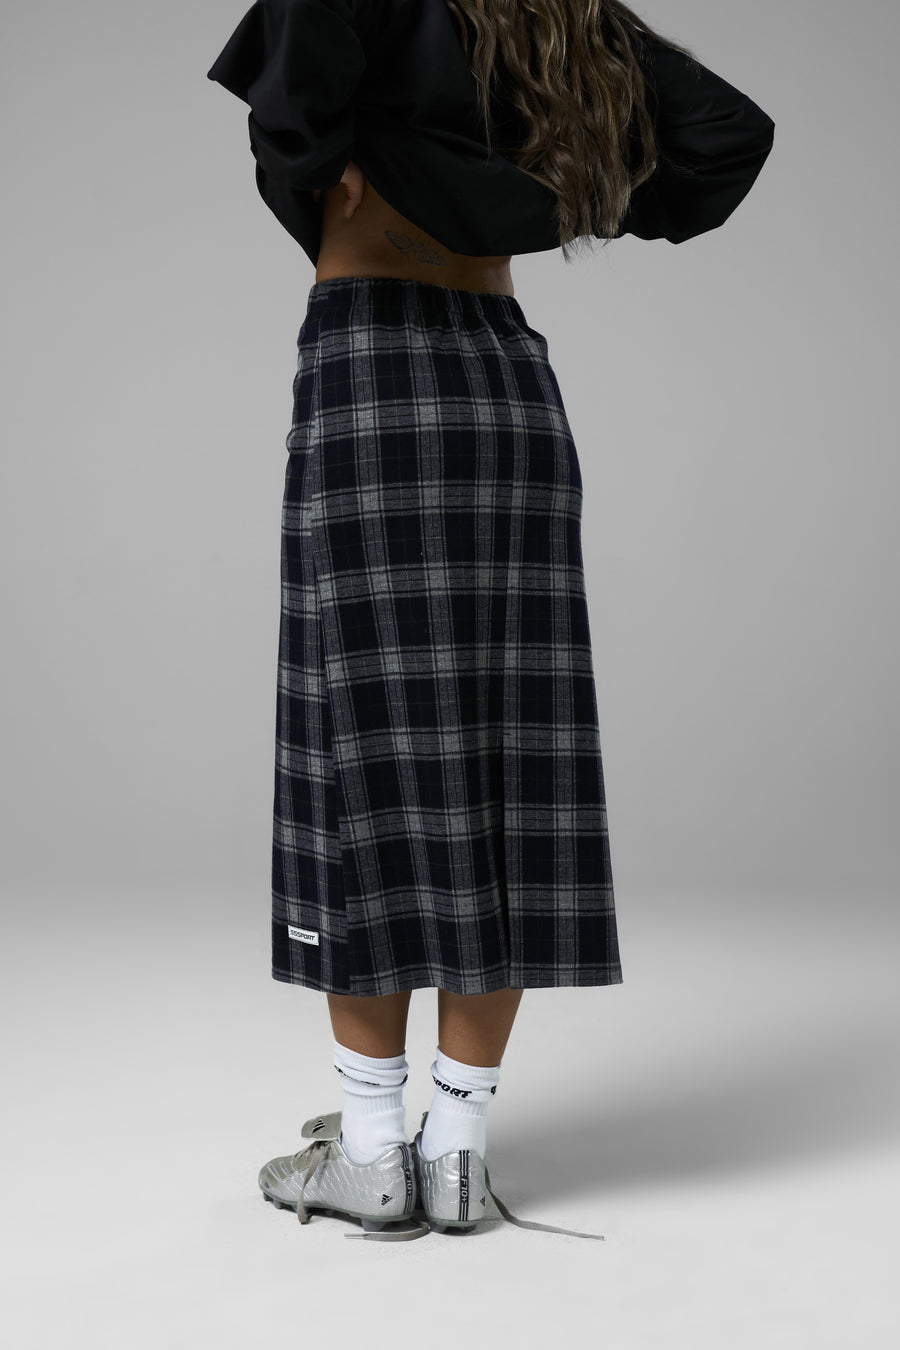 JOSEPHINE Full Length Skirt